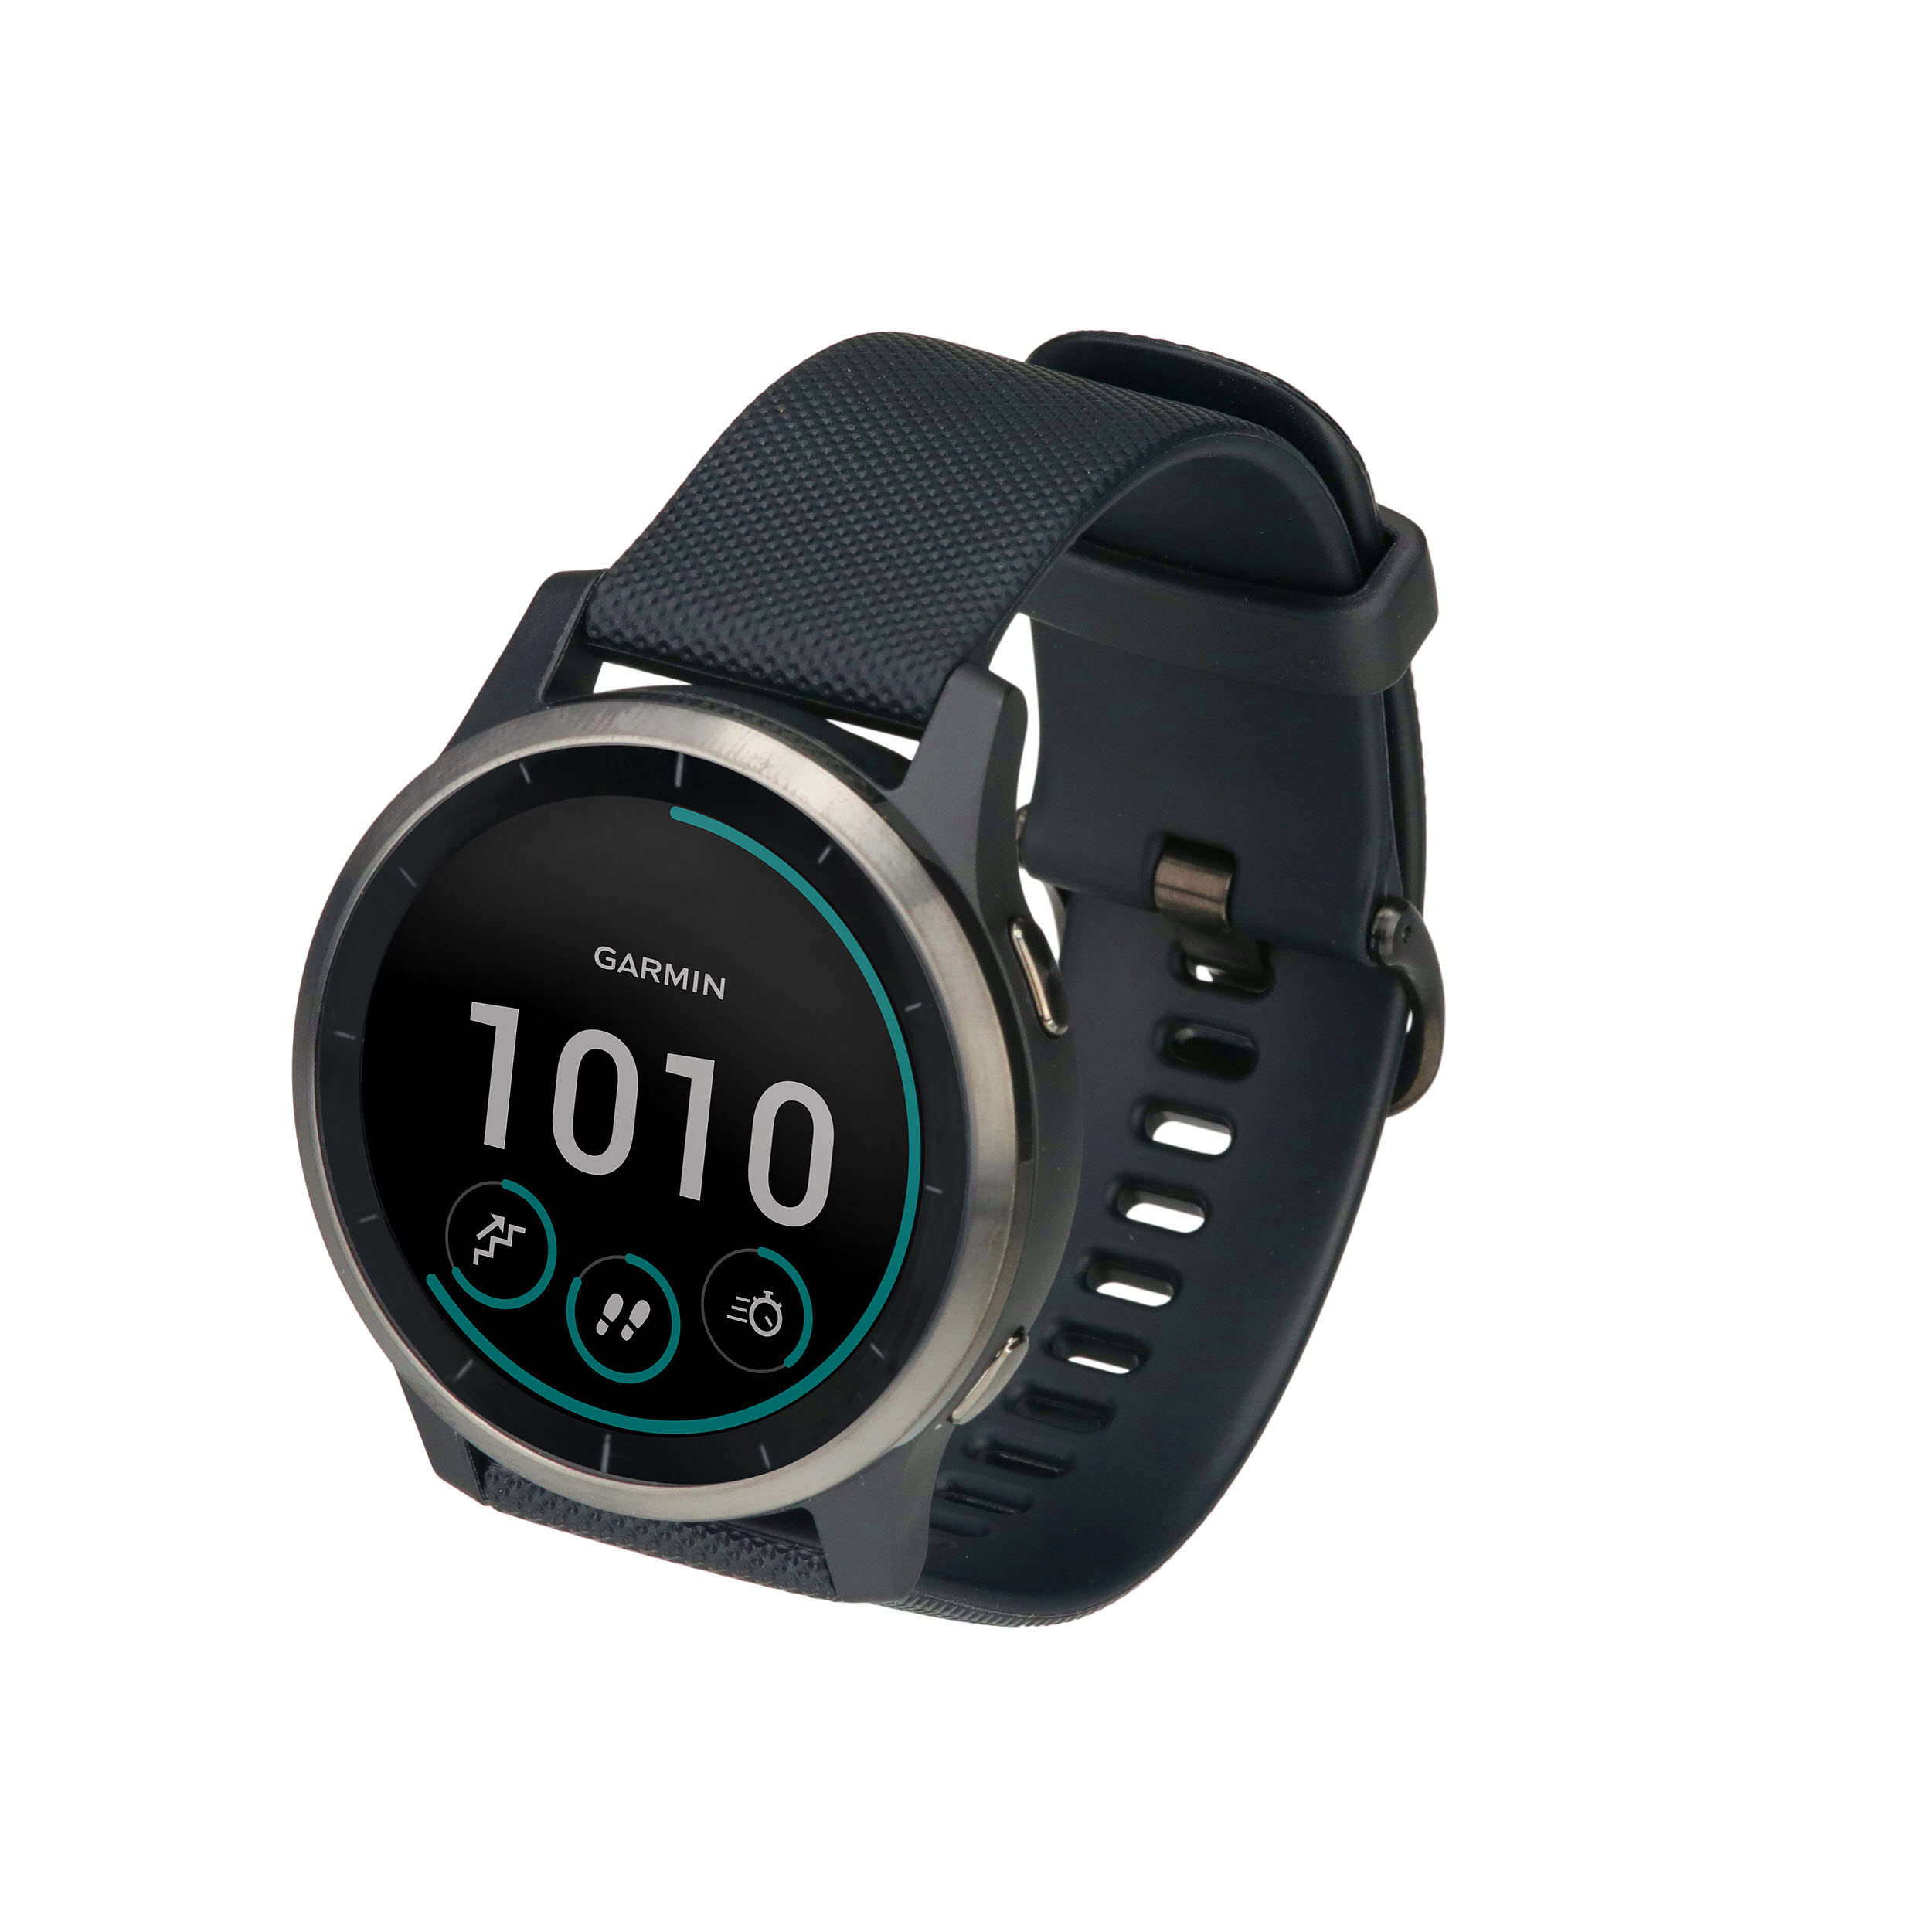 Garmin Vivoactive 4 GPS Smartwatch - Silver with Gray Band